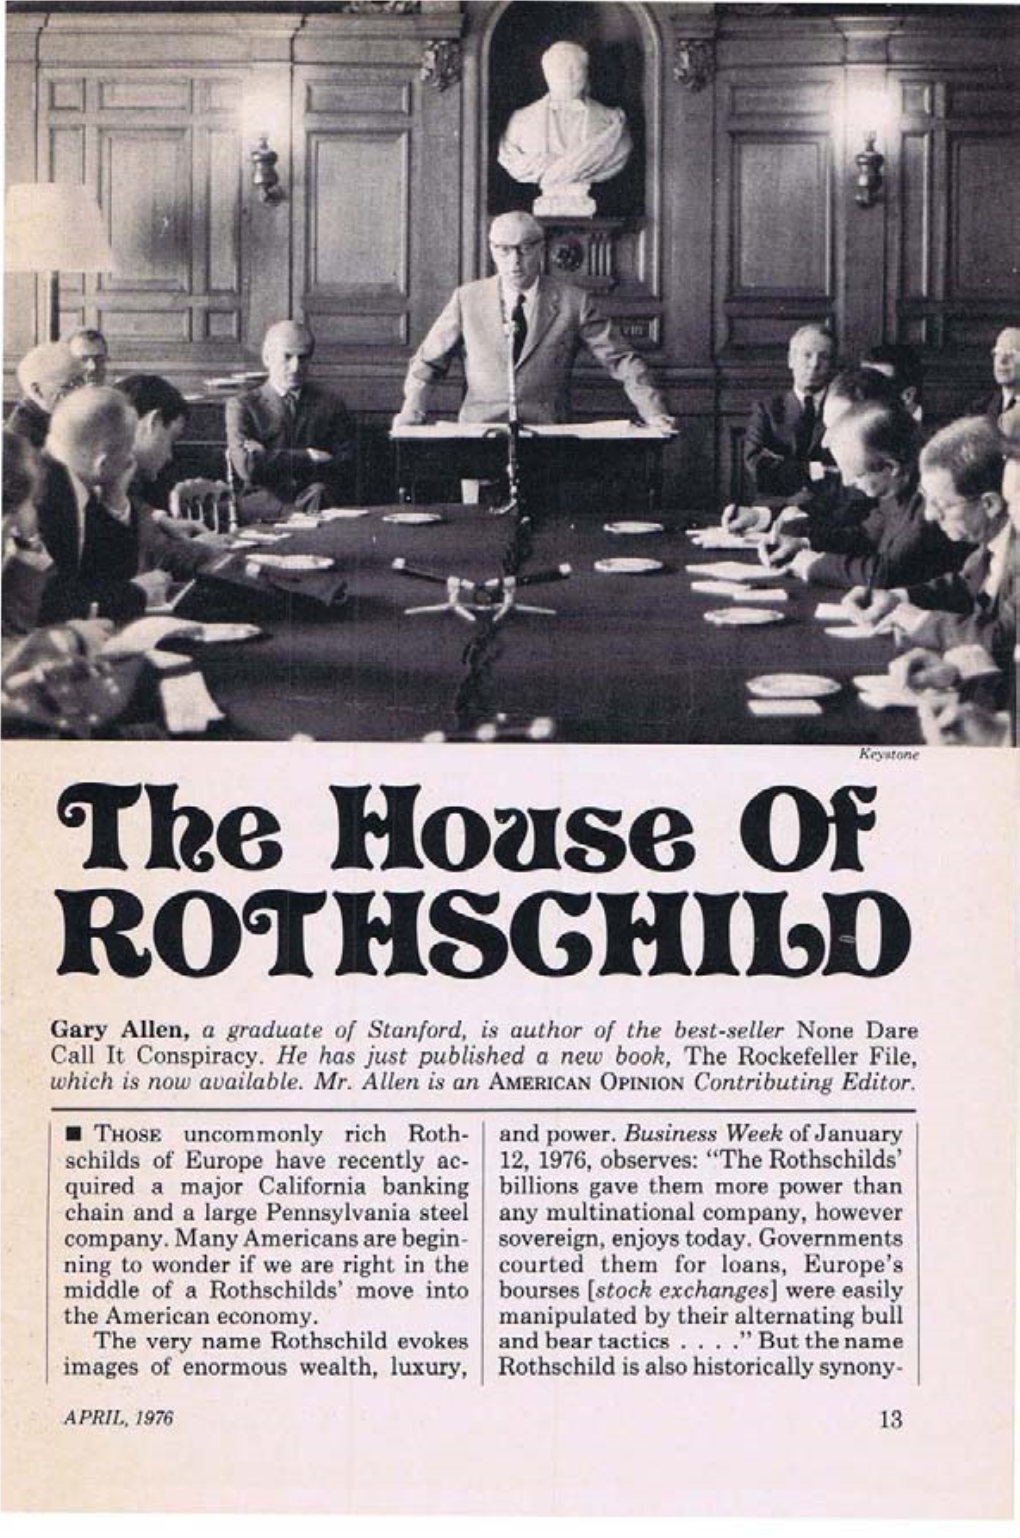 The House of Rothchild